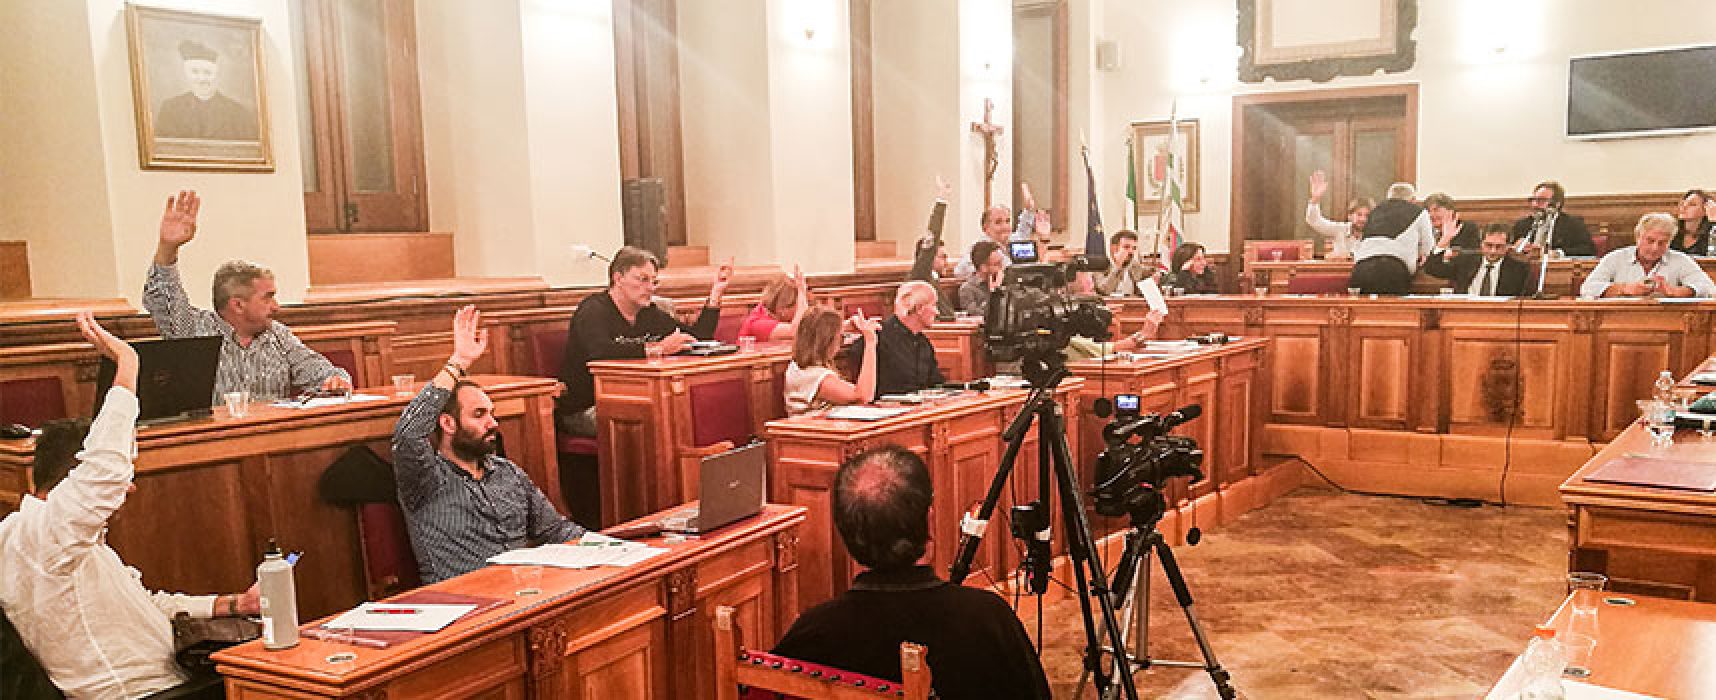 Consiglio Comunale, approvato Bilancio consolidato 2018; Angarano: “Quadro rassicurante”